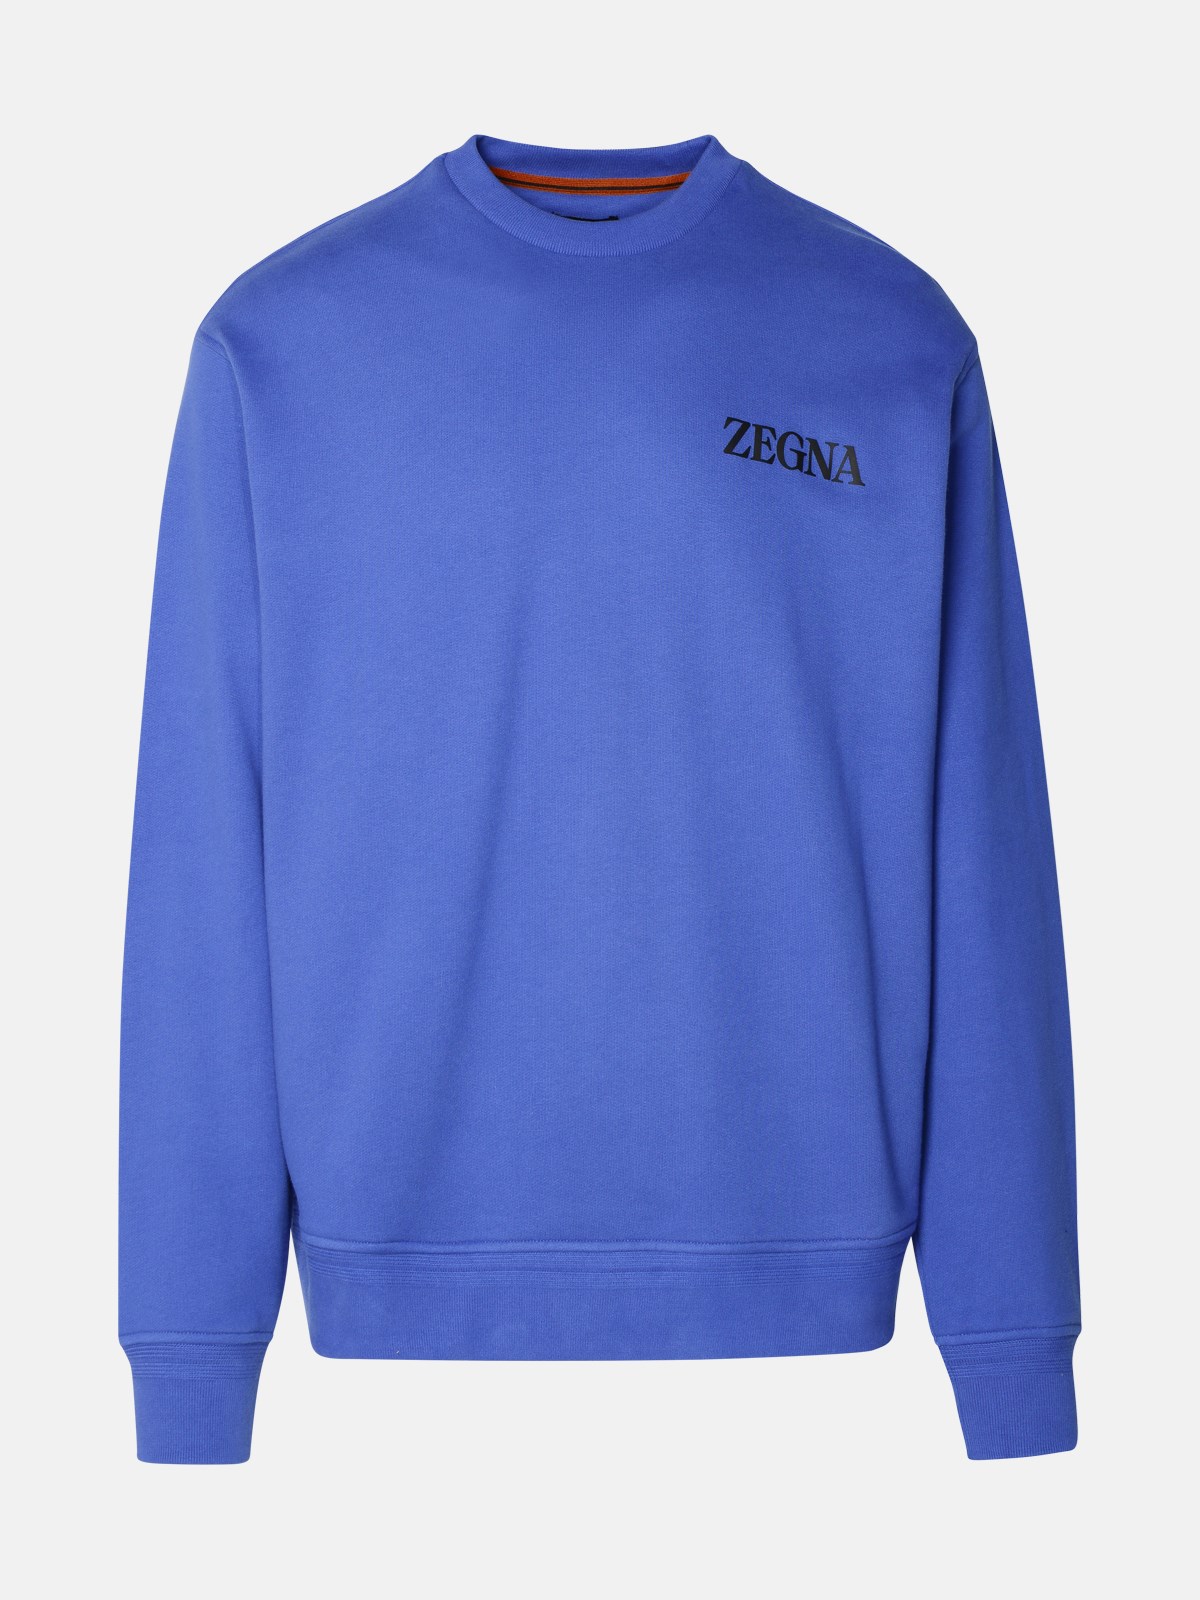 Shop Zegna Blue Cotton Sweatshirt